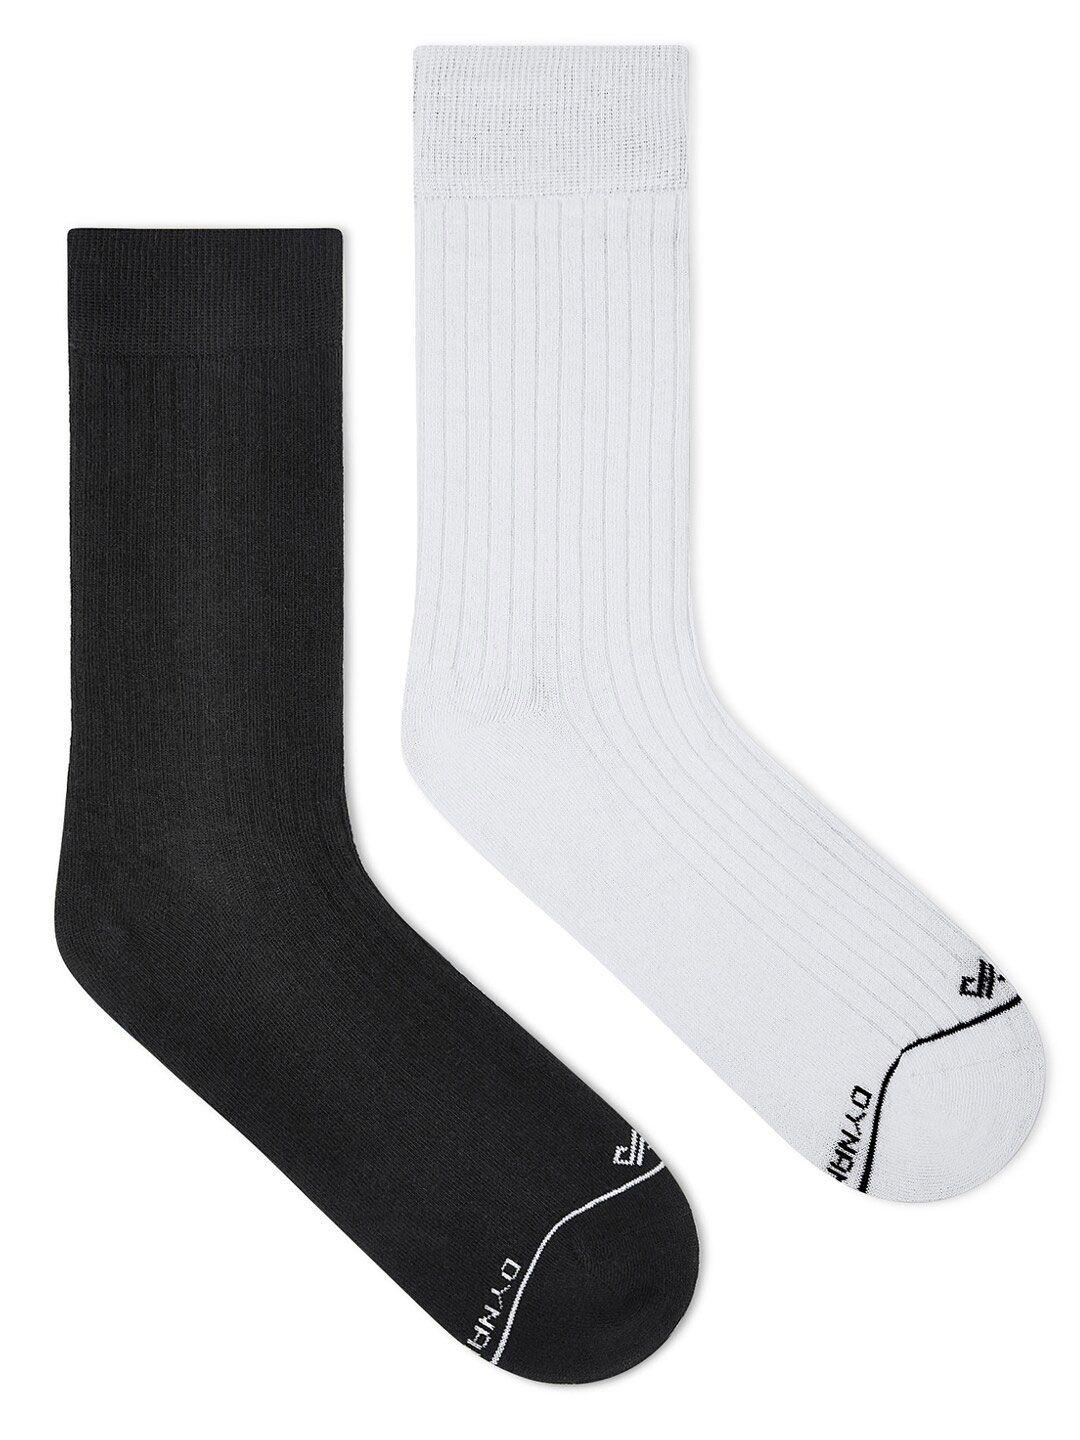 dynamocks pack of 2 calf-length socks